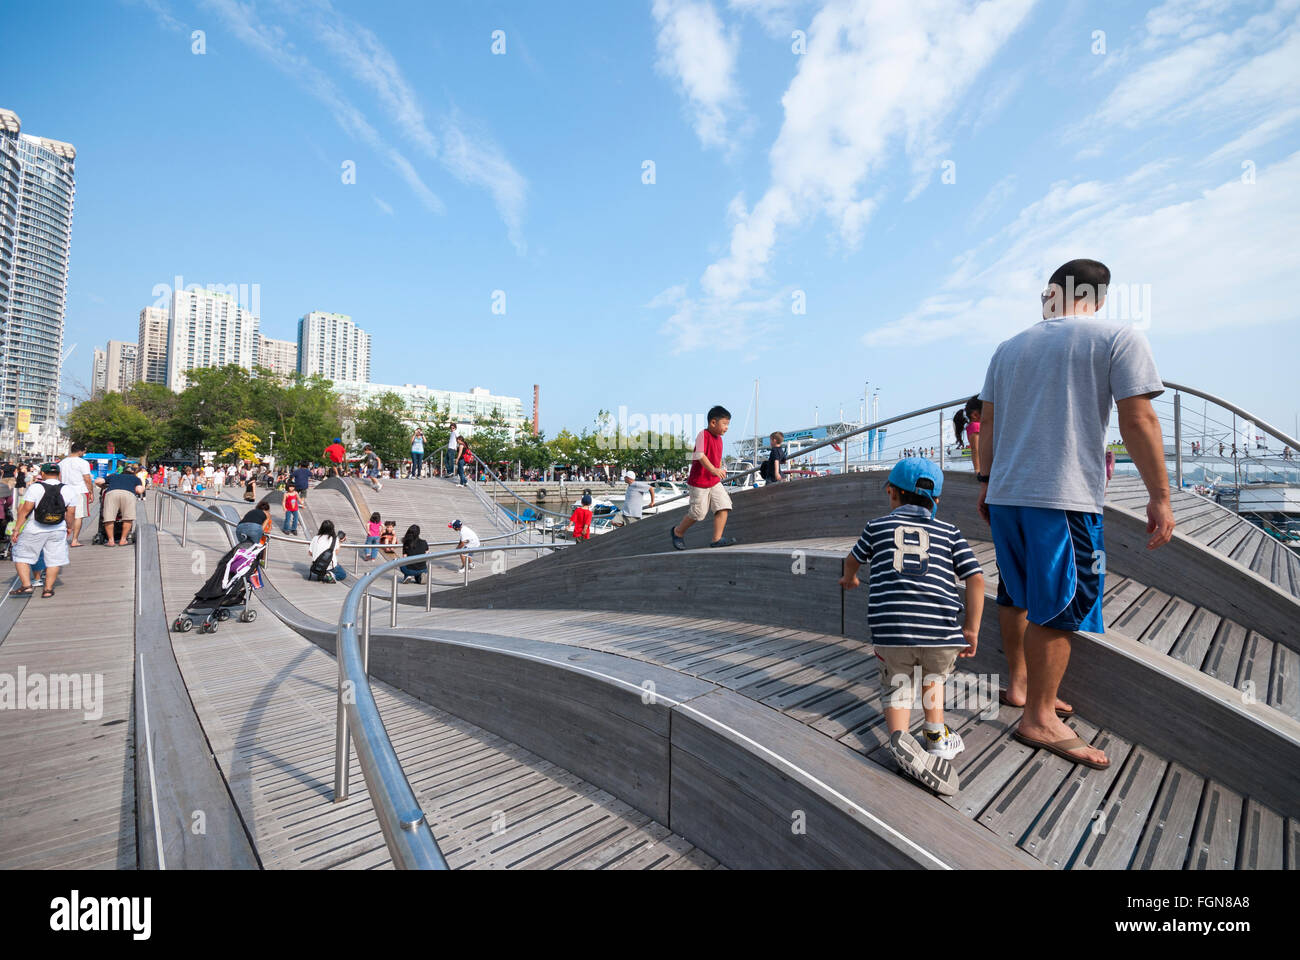 Der simcoe wave Deck ist ein urbaner Kunst Projekt in Toronto Harbourfront bedeutete die Wave Bewegung des Lake Ontario zu emulieren Stockfoto